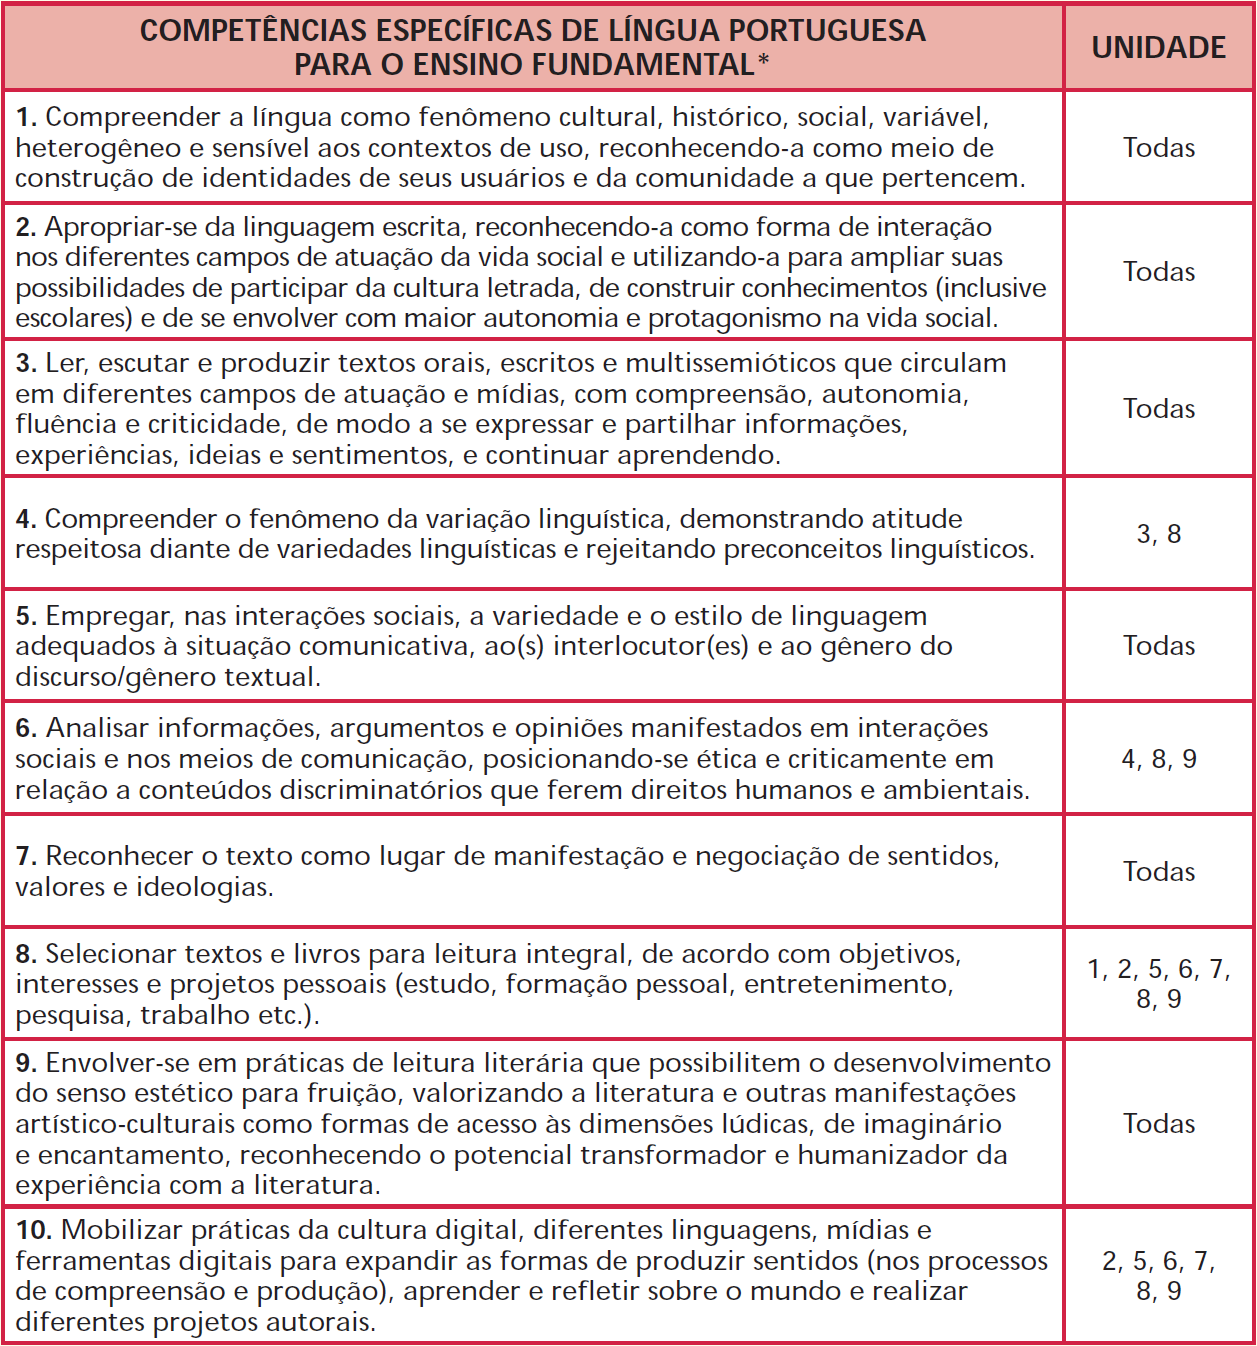 IMAGEM: Tabela contendo as competências específicas de língua portuguesa para o ensino fundamental. FIM DA IMAGEM.